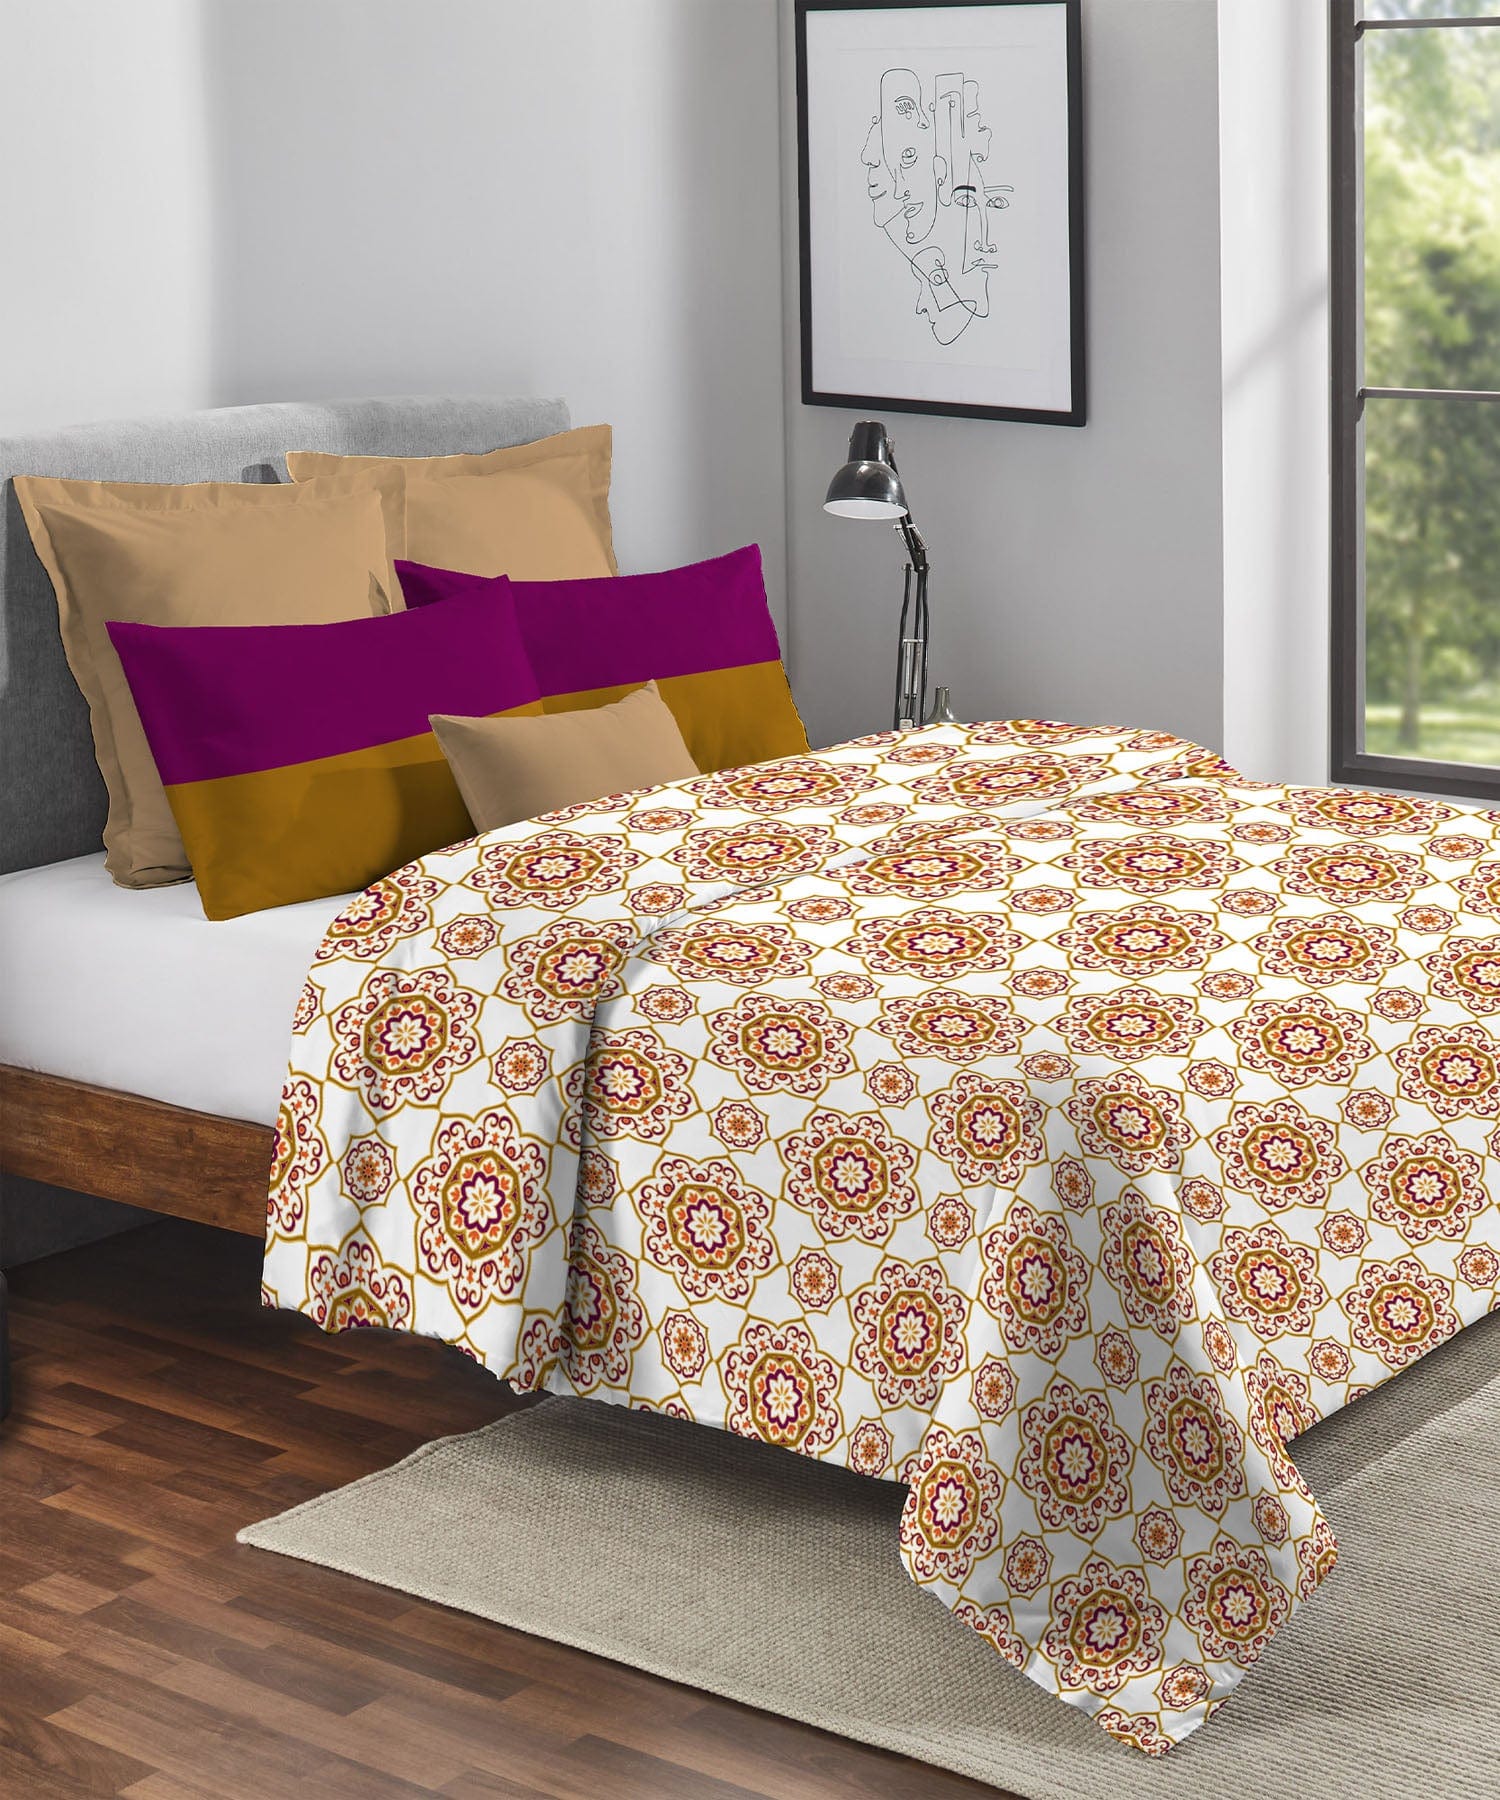 Queen Comforter ₹2999/-